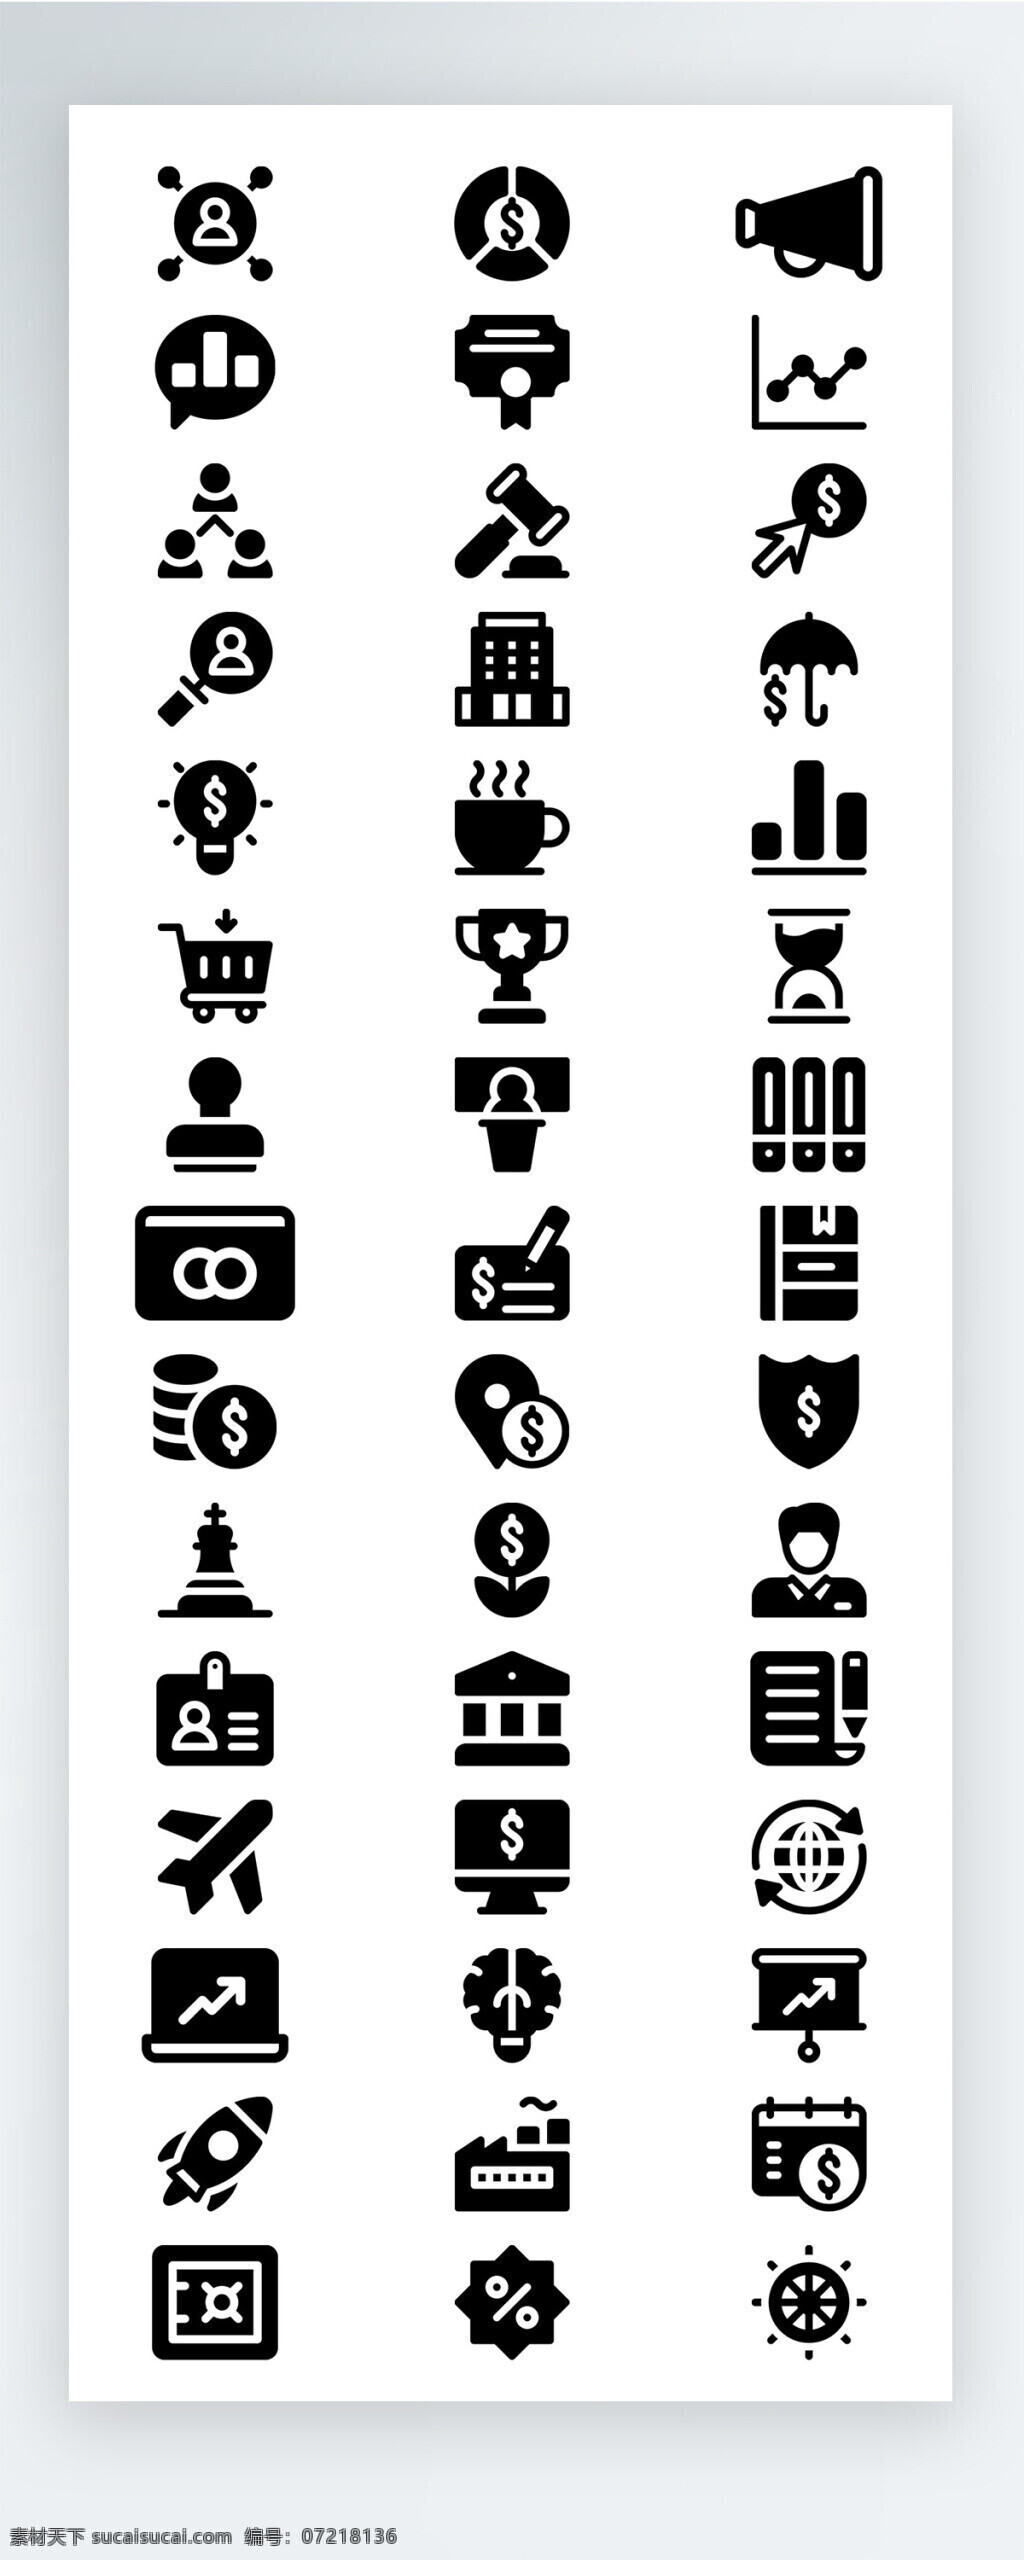 黑色 工作 生活 图标 矢量 icon icon图标 ui 手机 拟物 办公 人物 社交 金融 飞机